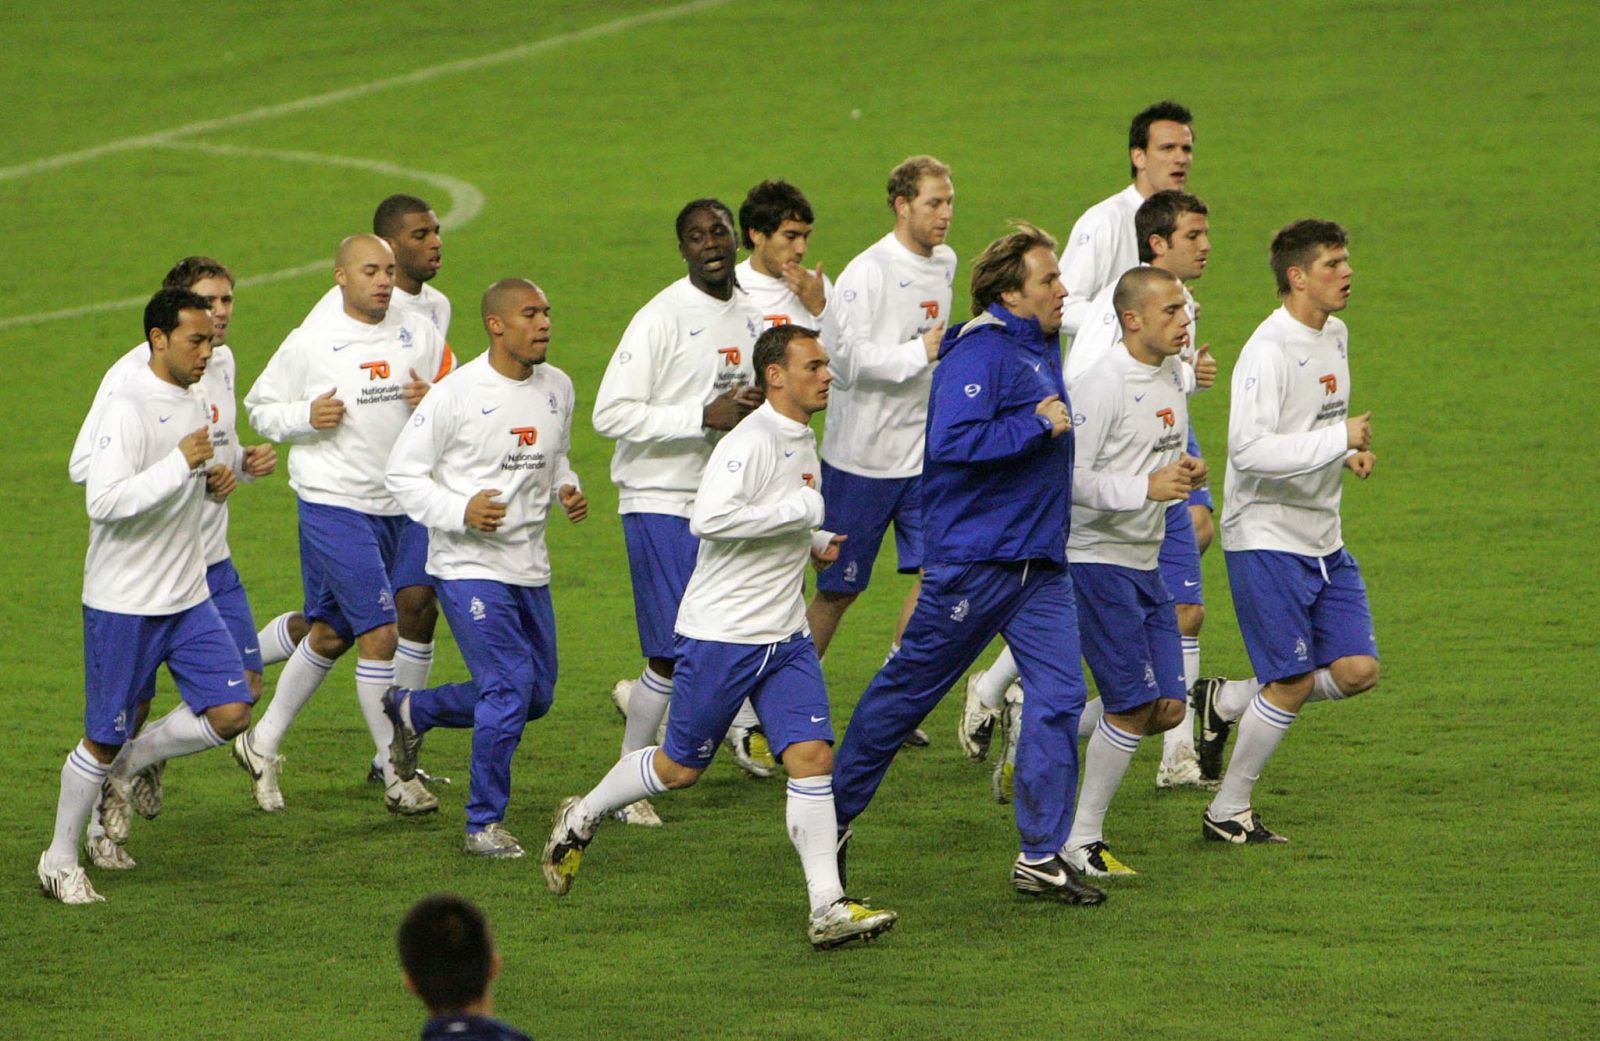 Split, 05.02.2008 - Reprezentativci Nizozemske (na slici) trenirali su danas na Poljudu, veèer prije nogometne utakmice Hrvatska - Nizozemska.
foto FaH/ Veljko MARTINOVIÆ